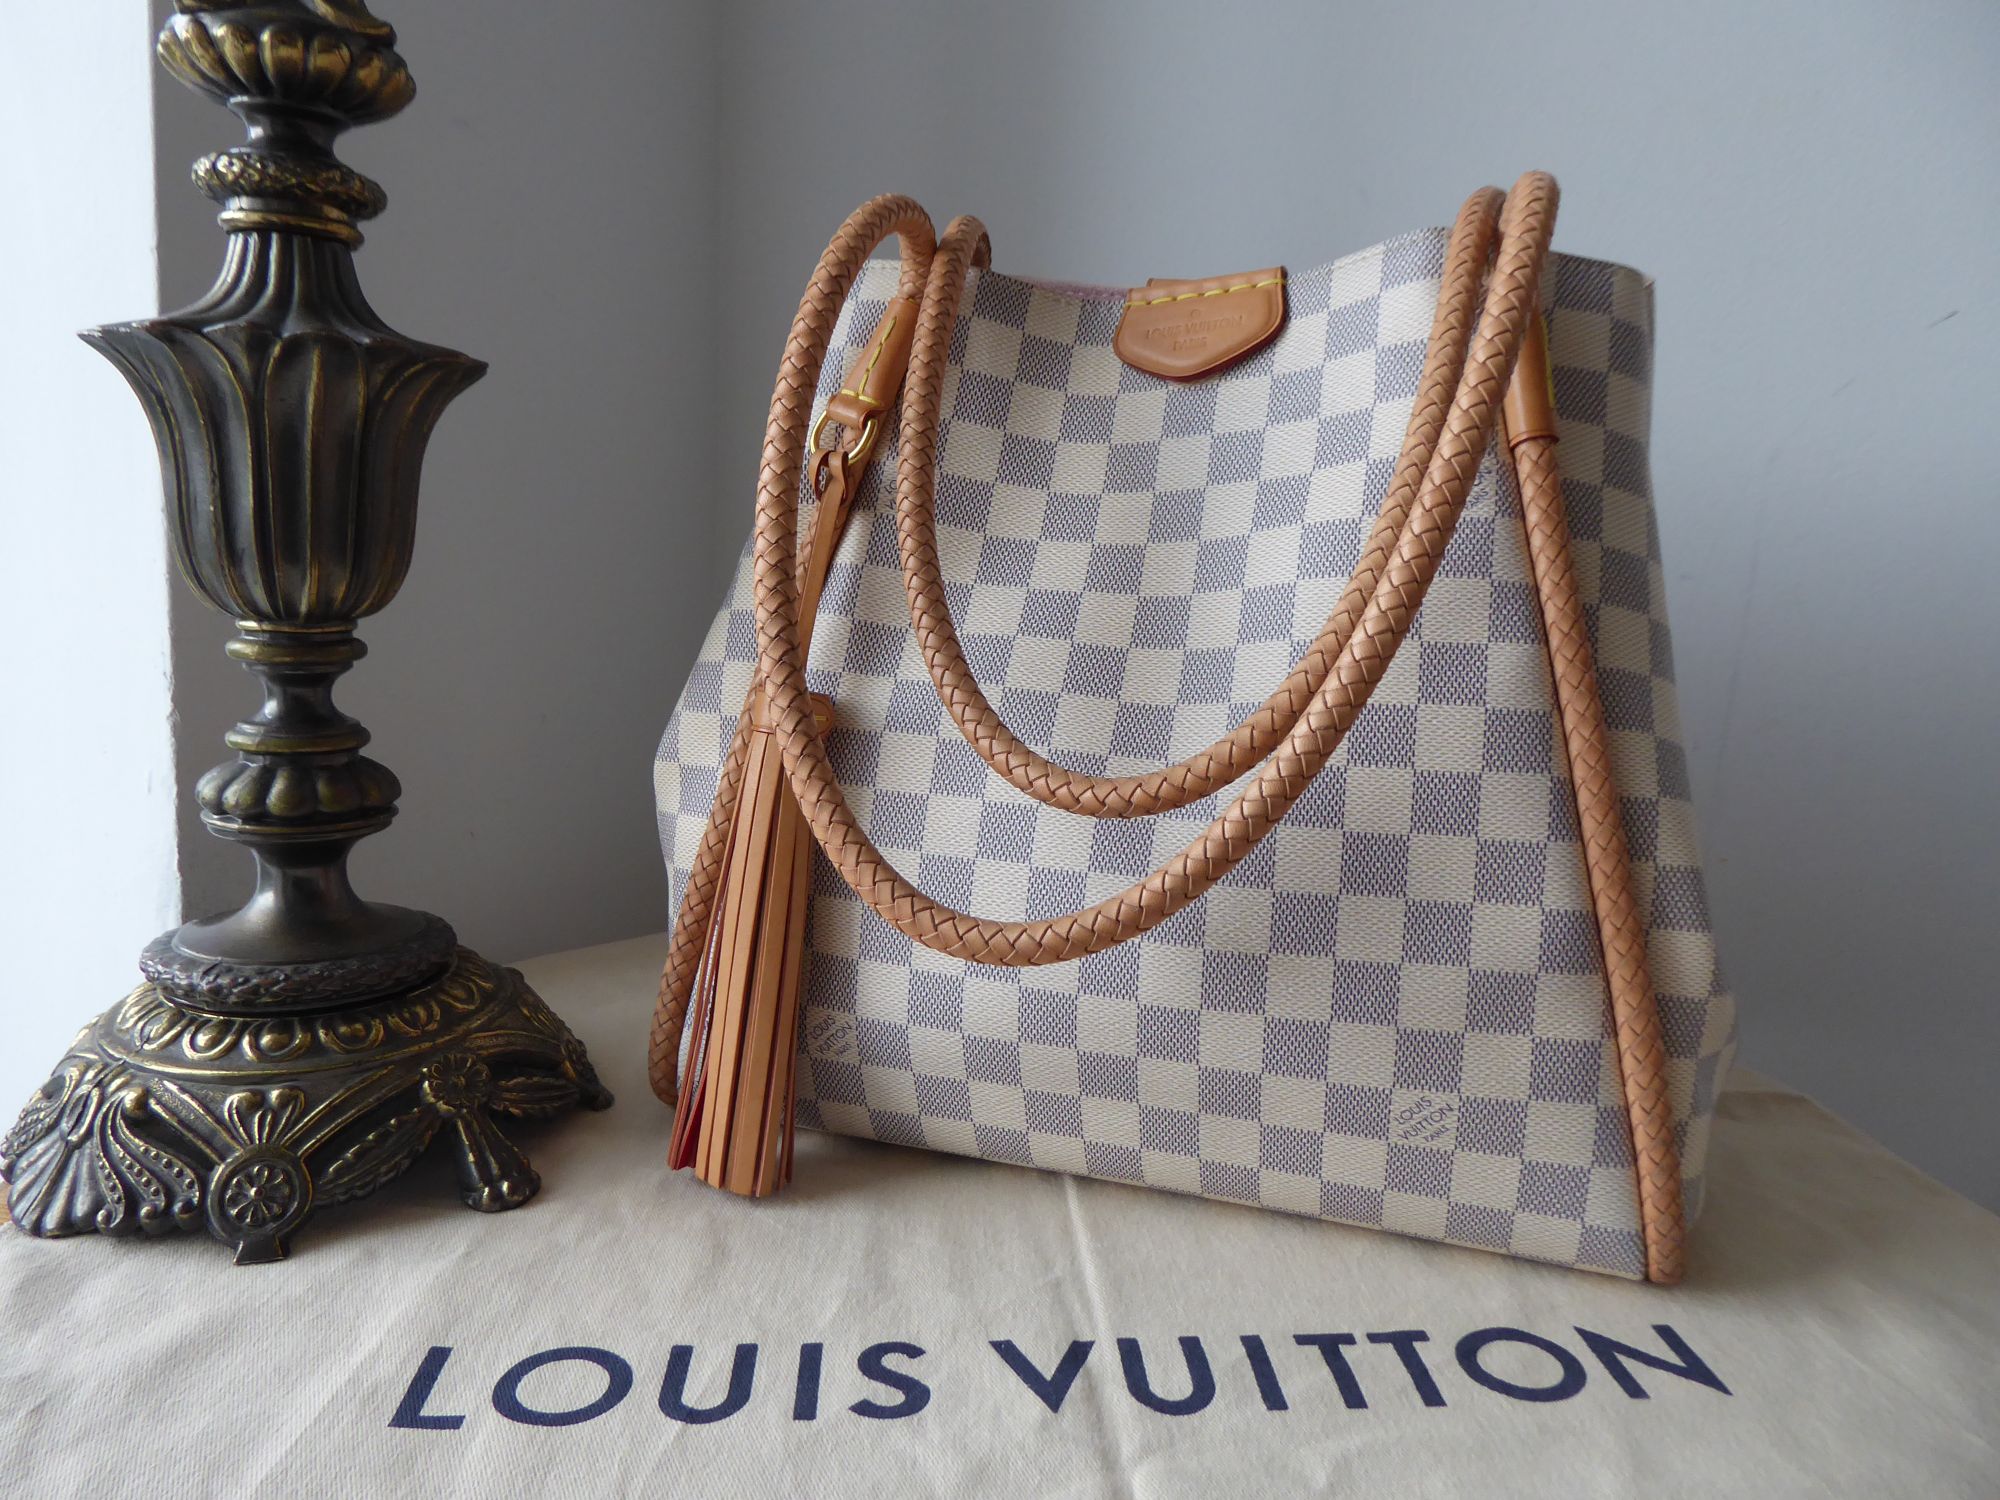 Louis Vuitton Propriano Tote in Damier Azur